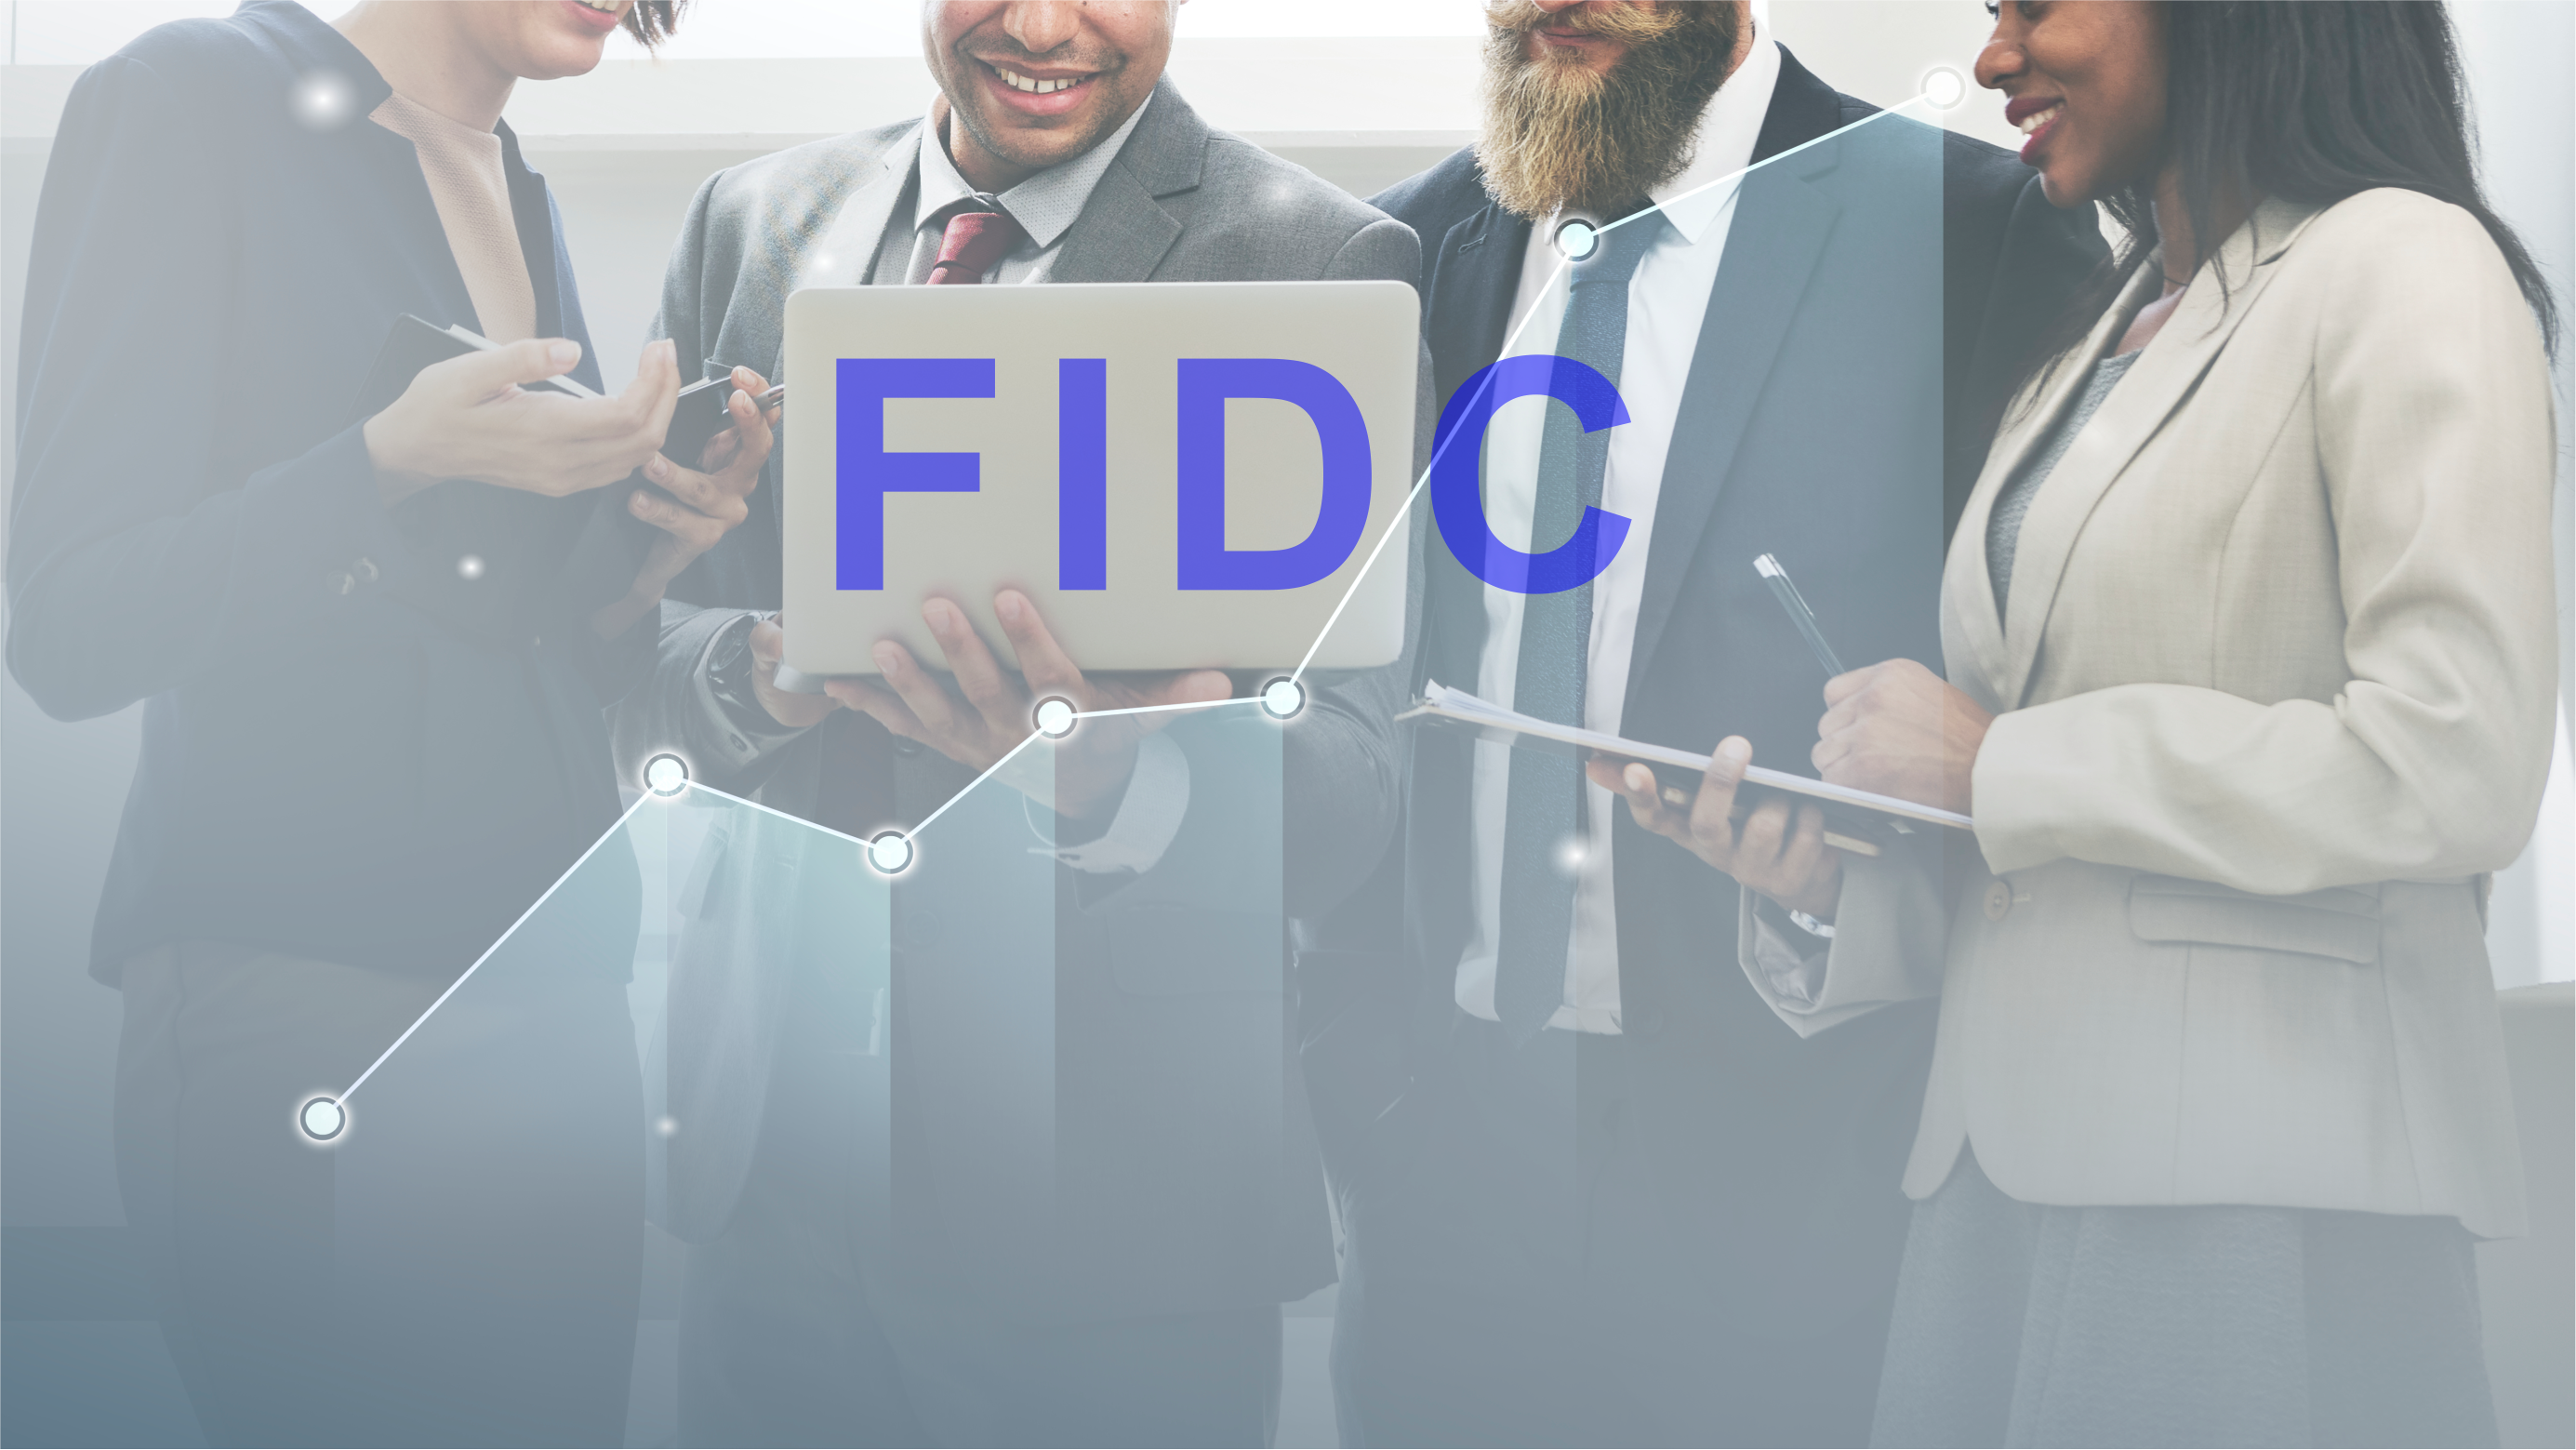 O que é FIDC e qual o papel dele na cadeia produtiva?